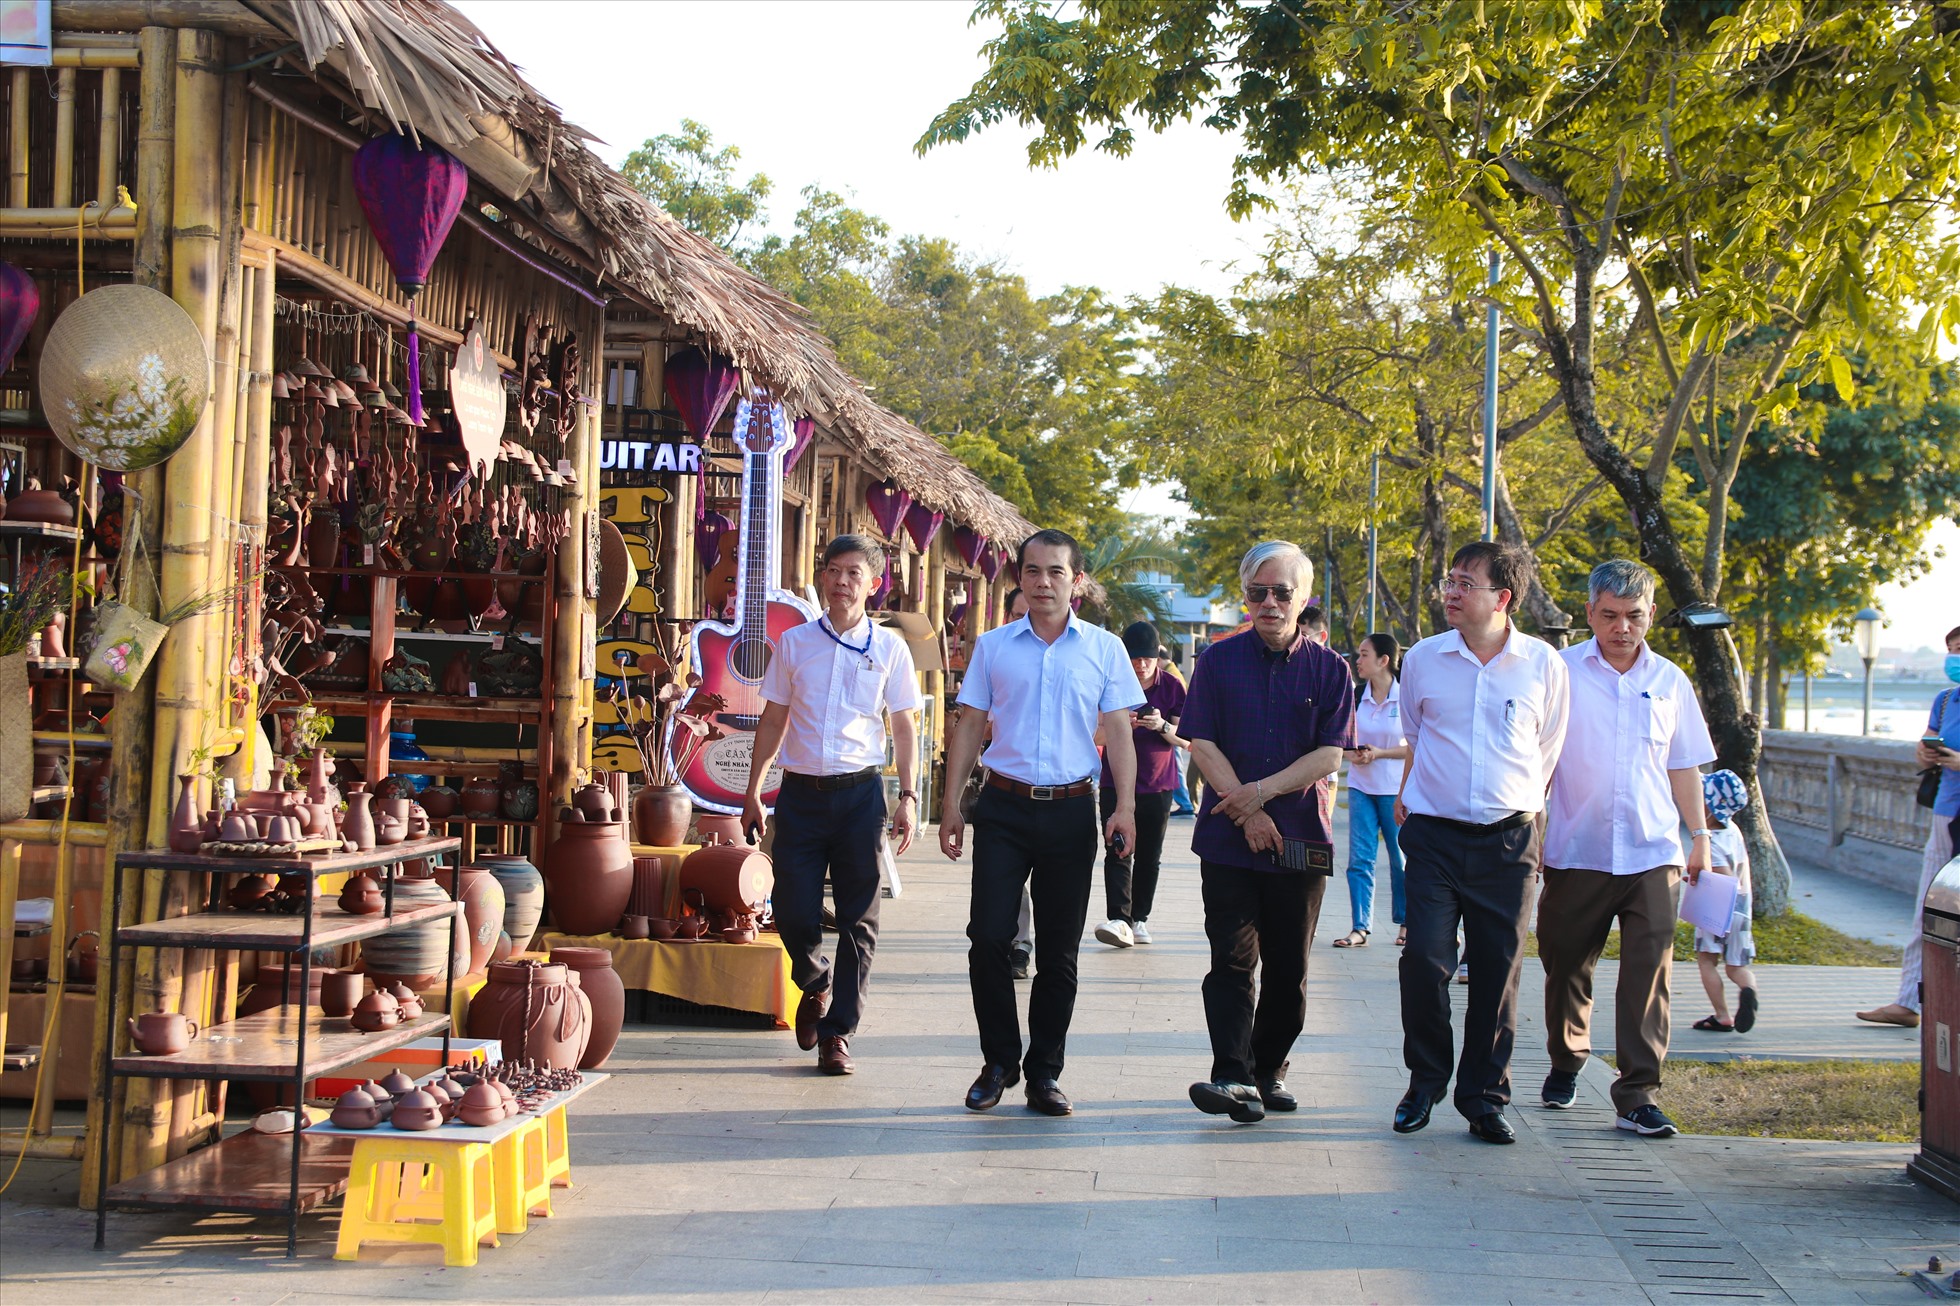 Festival Nghề truyền thống Huế năm 2023 với chủ đề “Tinh hoa nghề Việt” đã bắt đầu từ ngày 28.4 và sẽ kéo dài đến hết ngày 5.5.